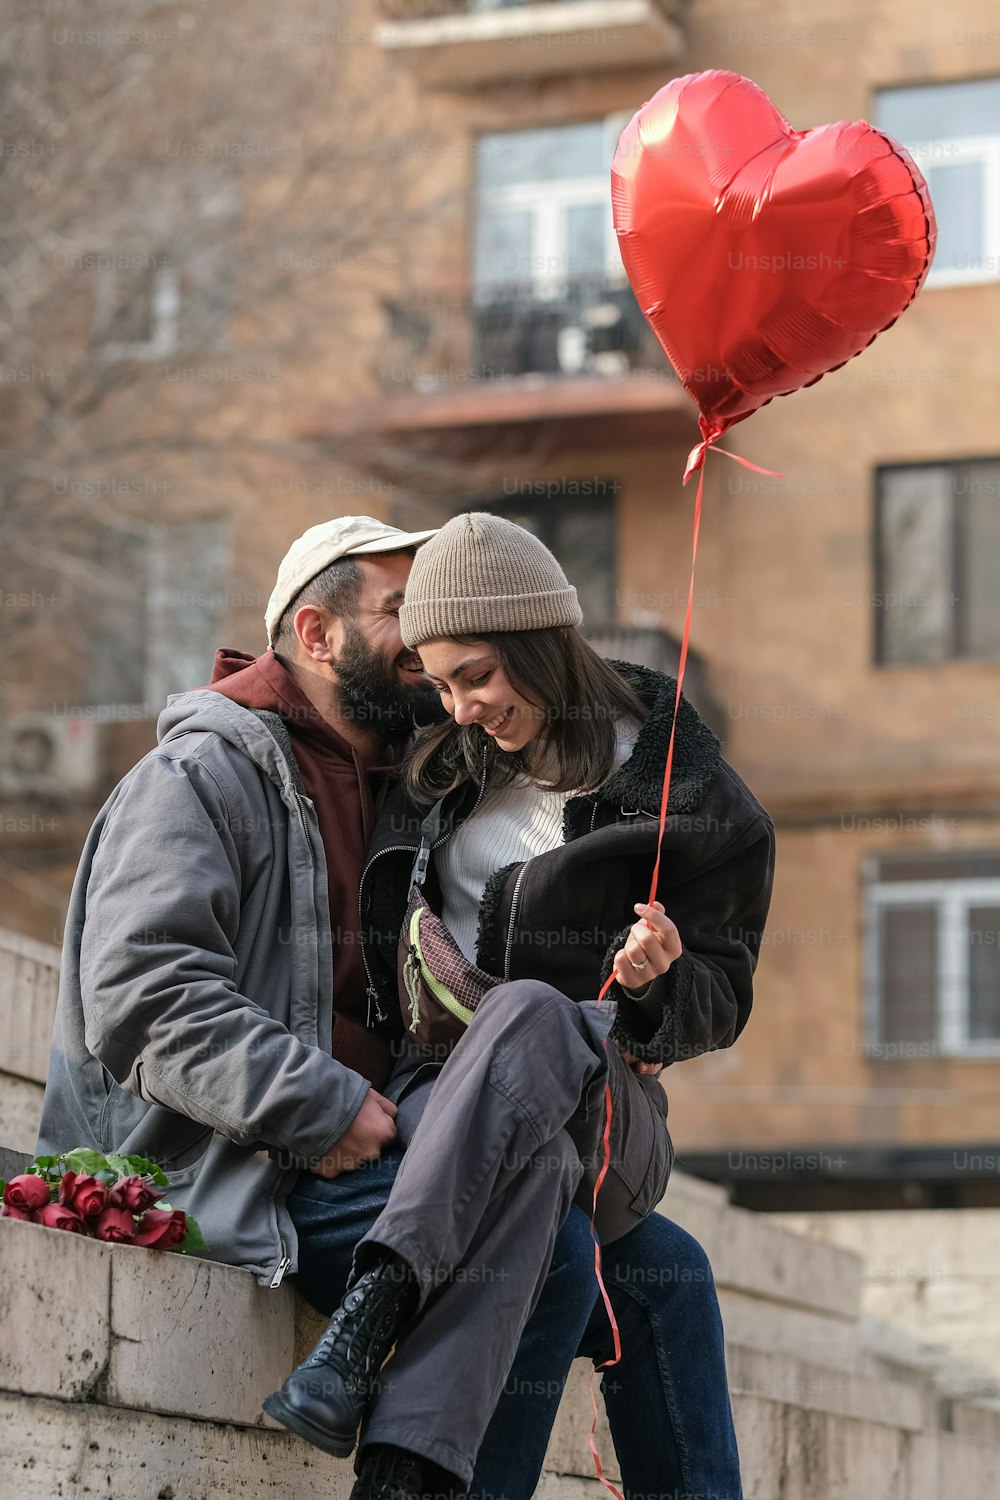 Un uomo e una donna seduti su un muro con un palloncino a forma di cuore